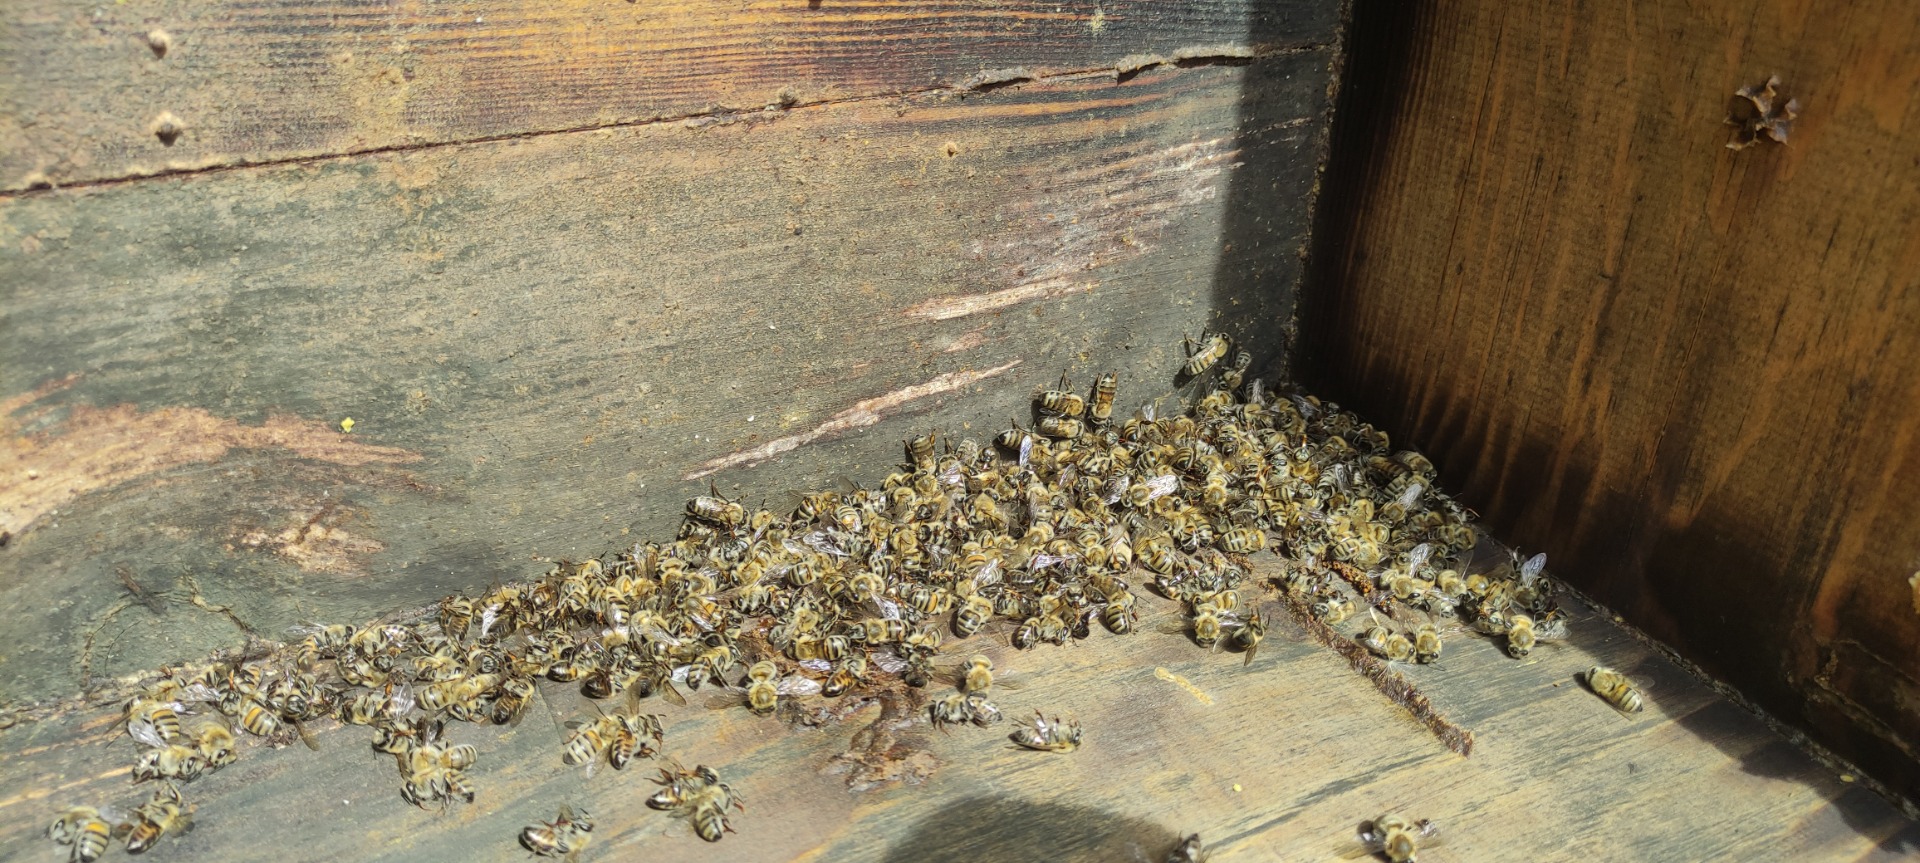 Bursa'da arı faciası. Yüzlerce kovan arı telef oldu. Üretici kara kara düşünüyor 6